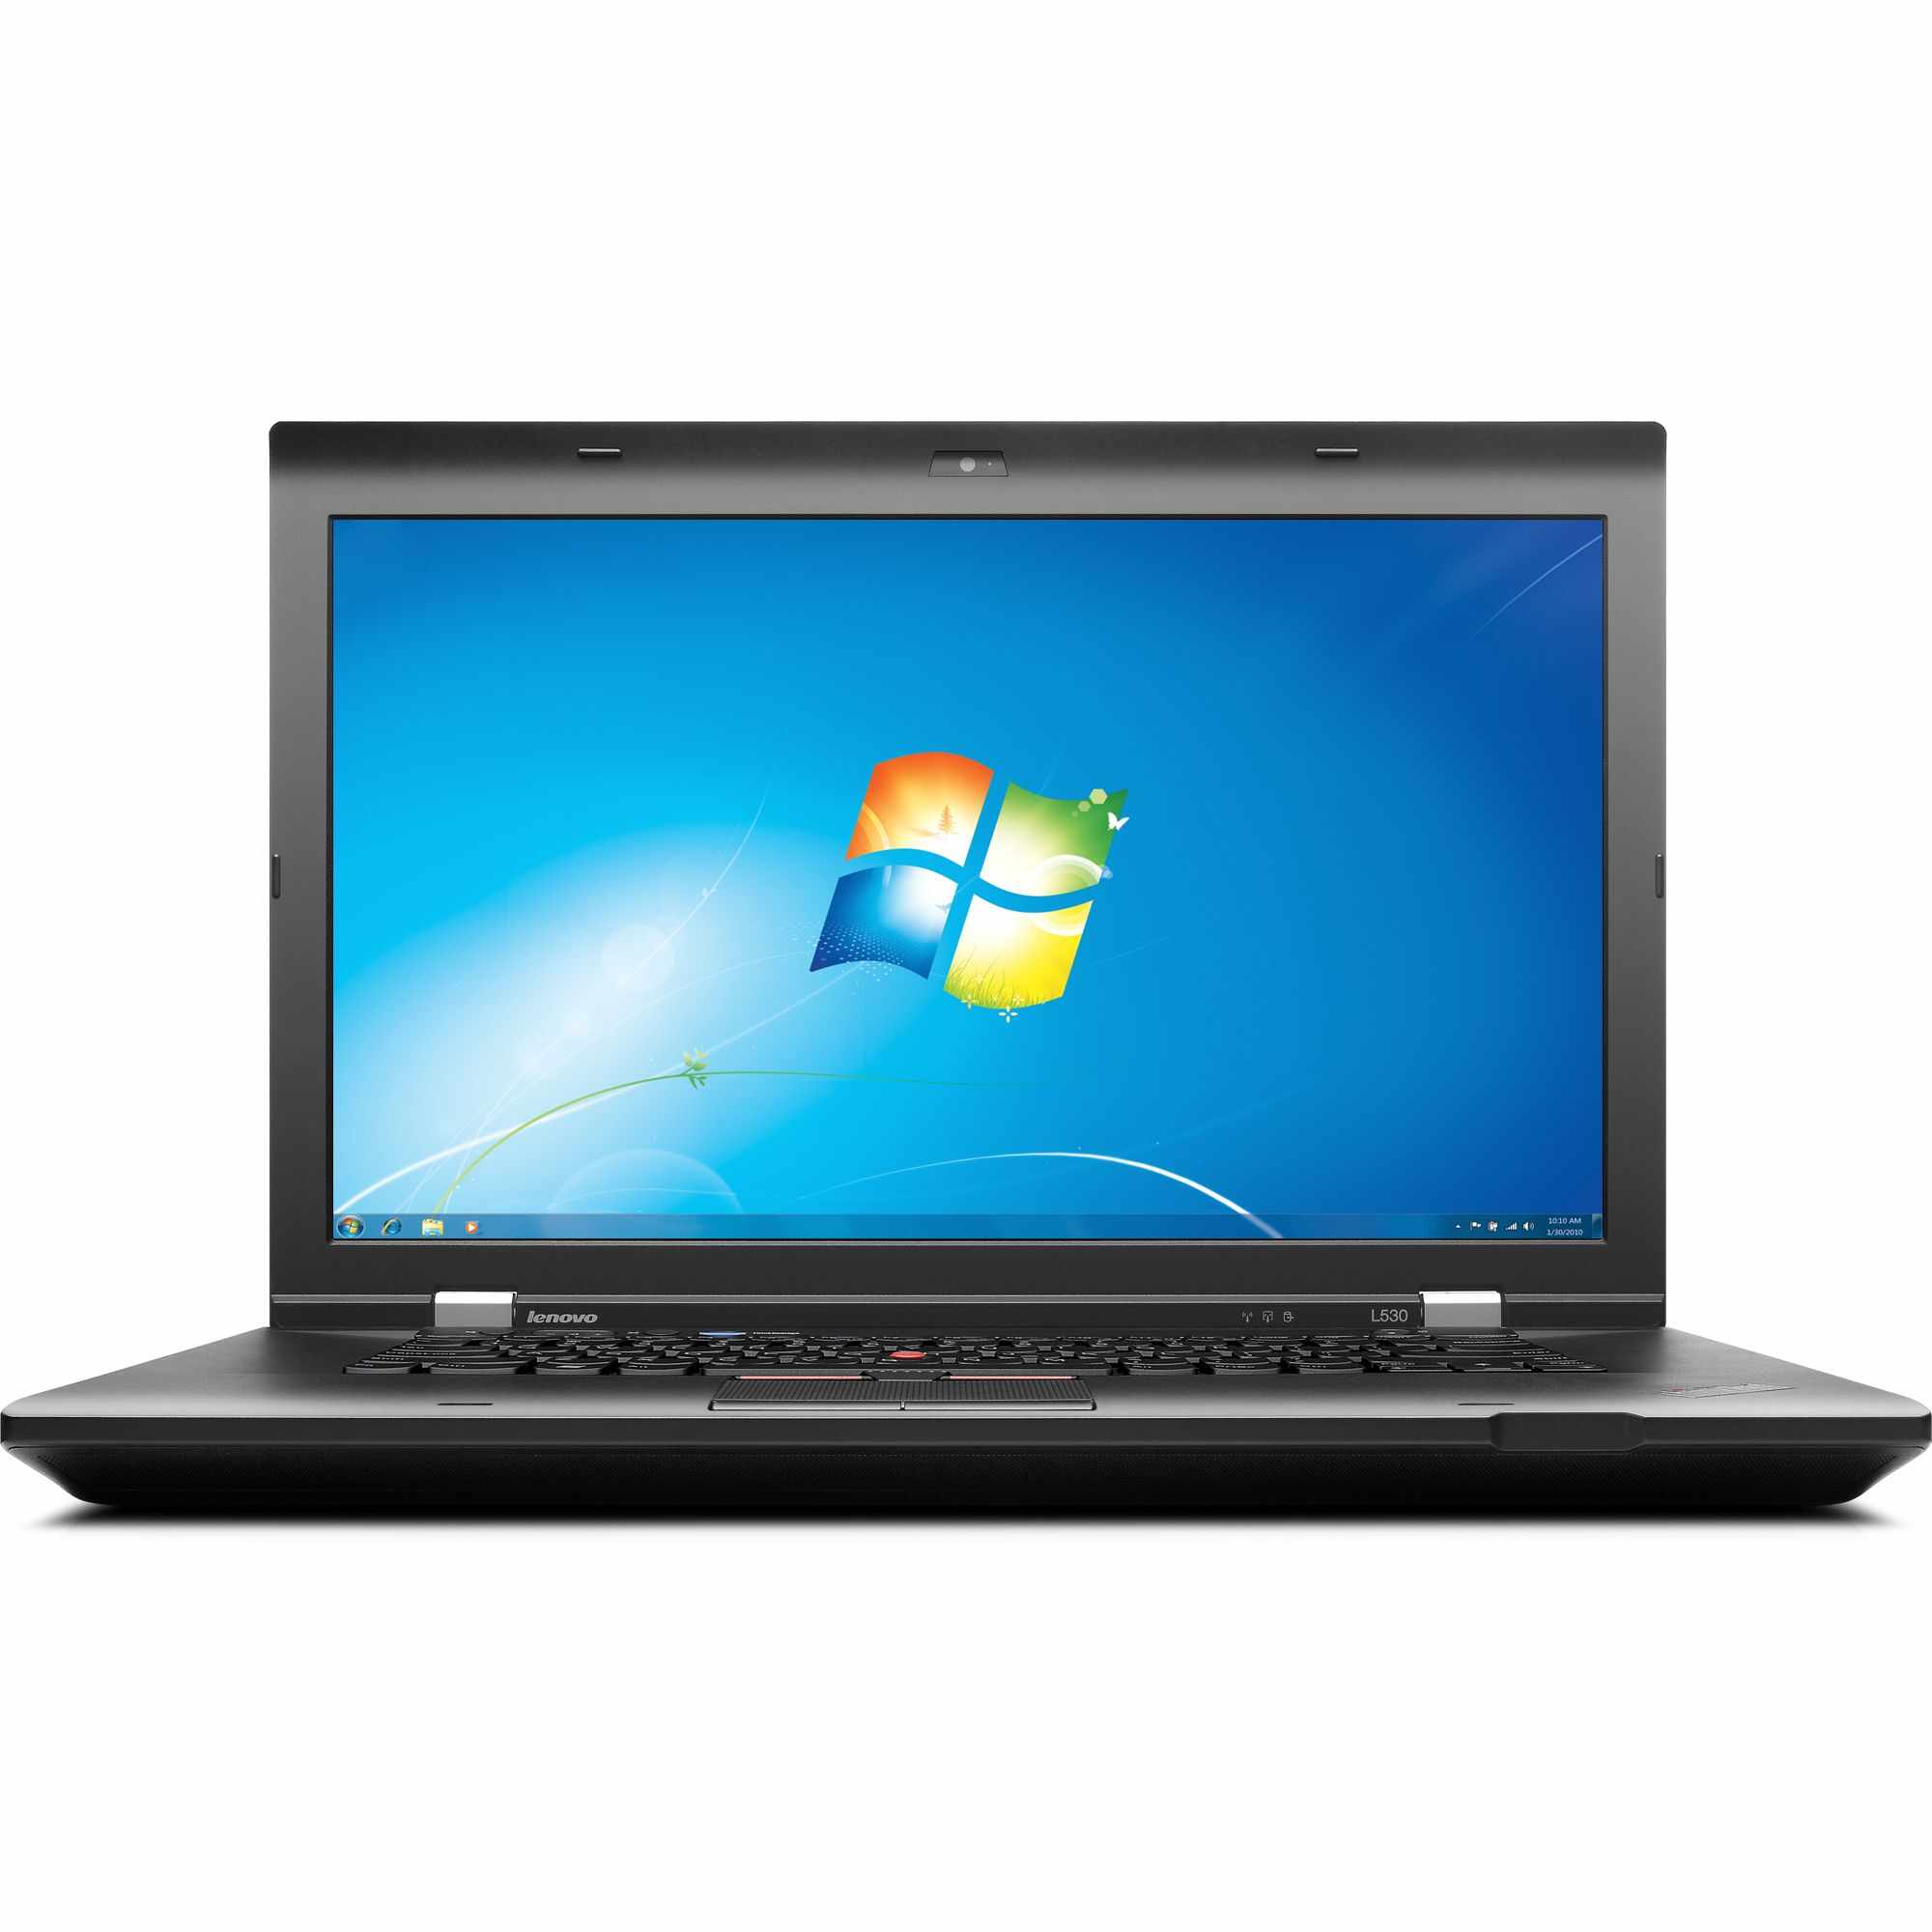 Laptop LENOVO ThinkPad L530, Intel Core i5-3230M 2.60GHz, 4GB DDR3, 500GB SATA, DVD-RW, 15.6 Inch, Fara Webcam